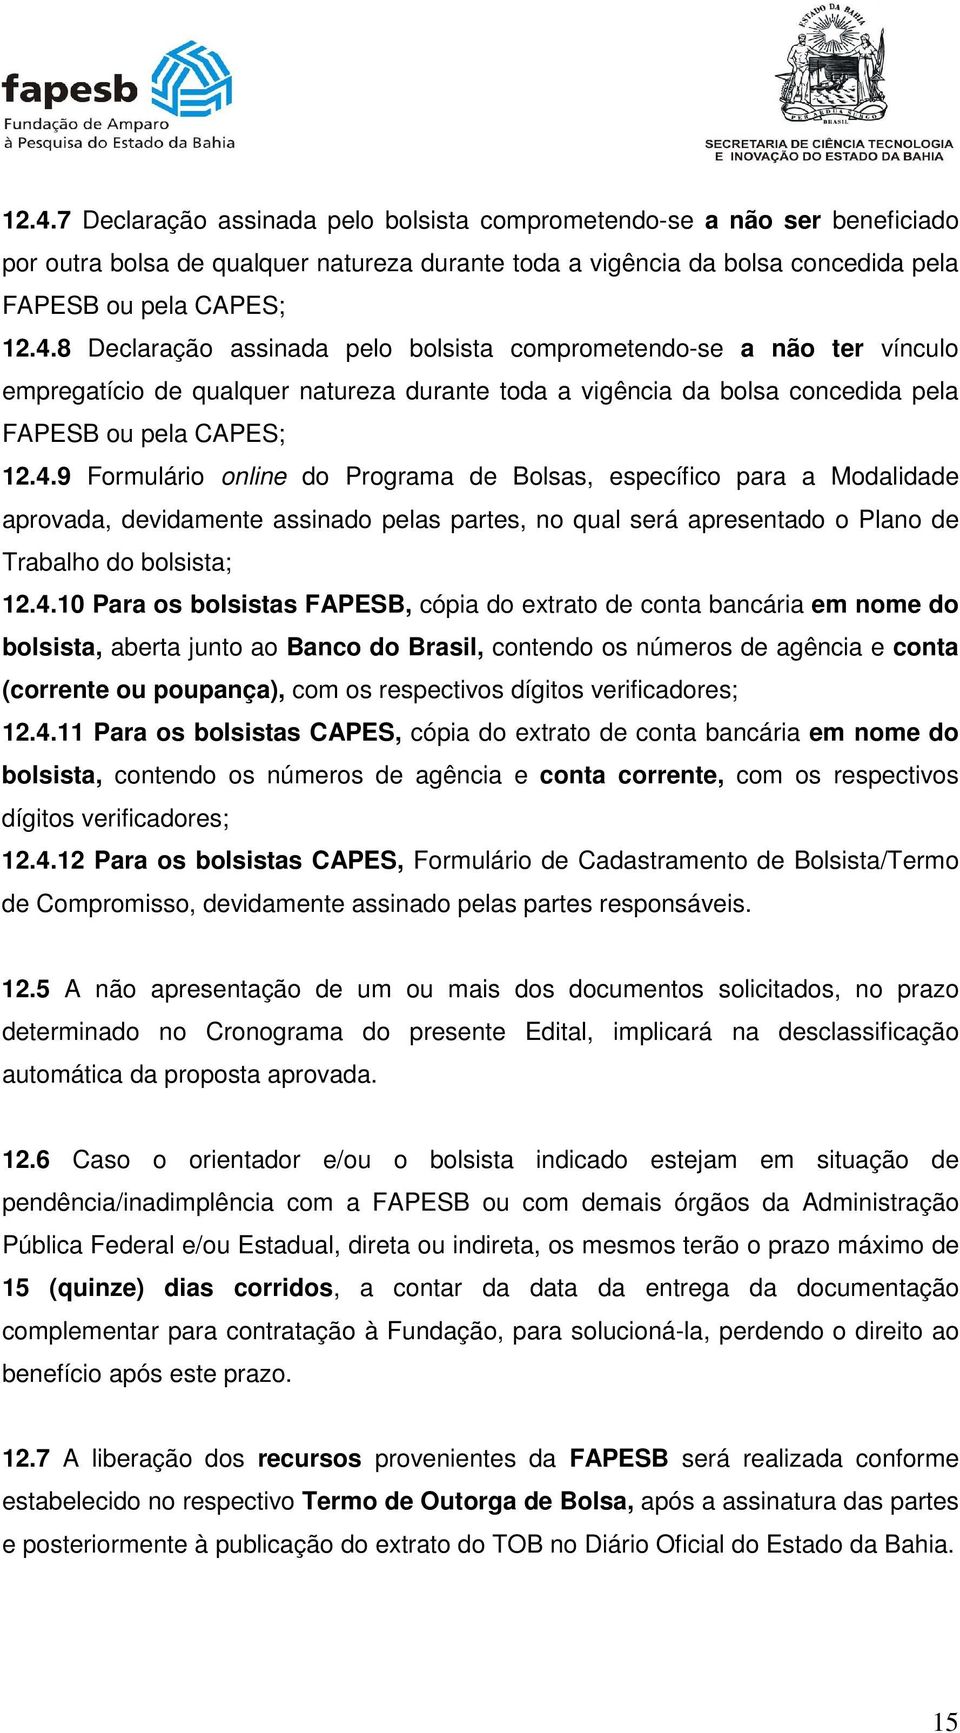 bolsistas FAPESB, cópia do extrato de conta bancária em nome do bolsista, aberta junto ao Banco do Brasil, contendo os números de agência e conta (corrente ou poupança), com os respectivos dígitos